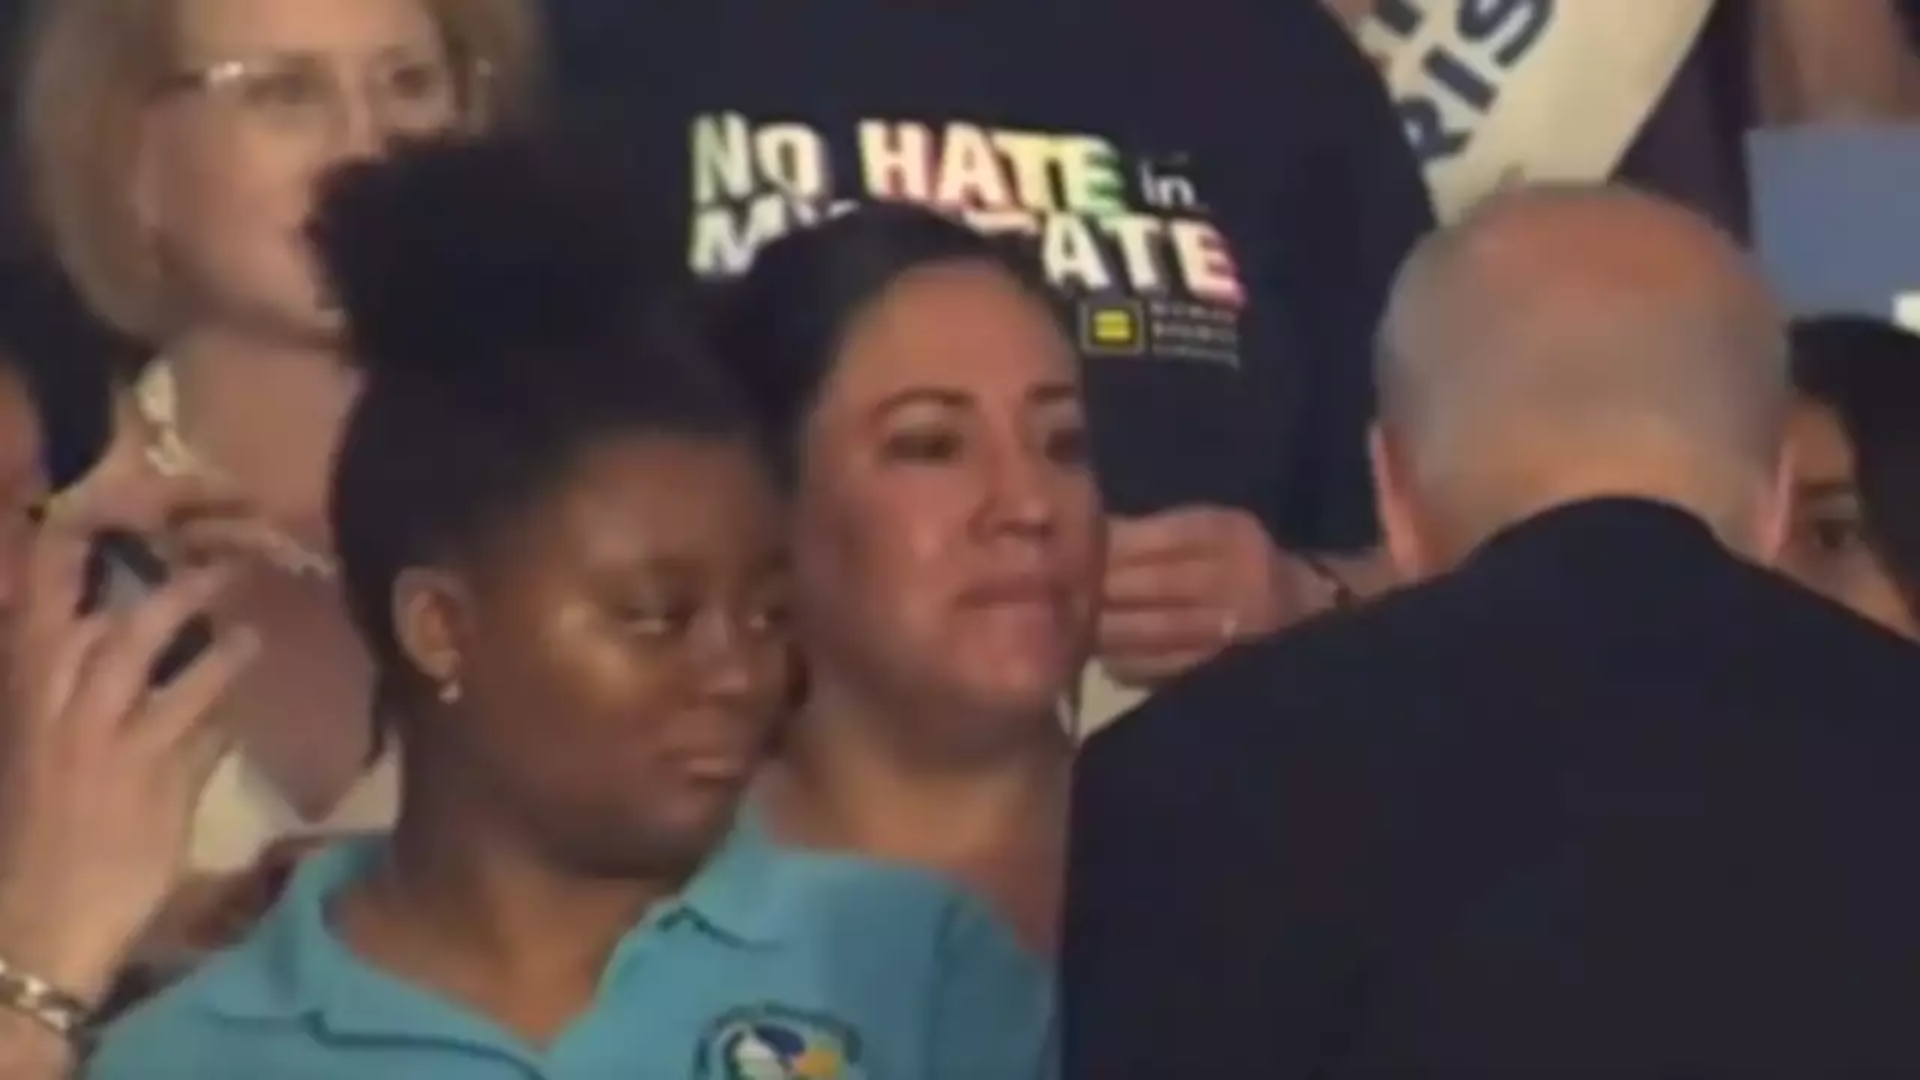 Watch: President Biden Ignores Black Woman Supporter; Viral Video Sparks Debate